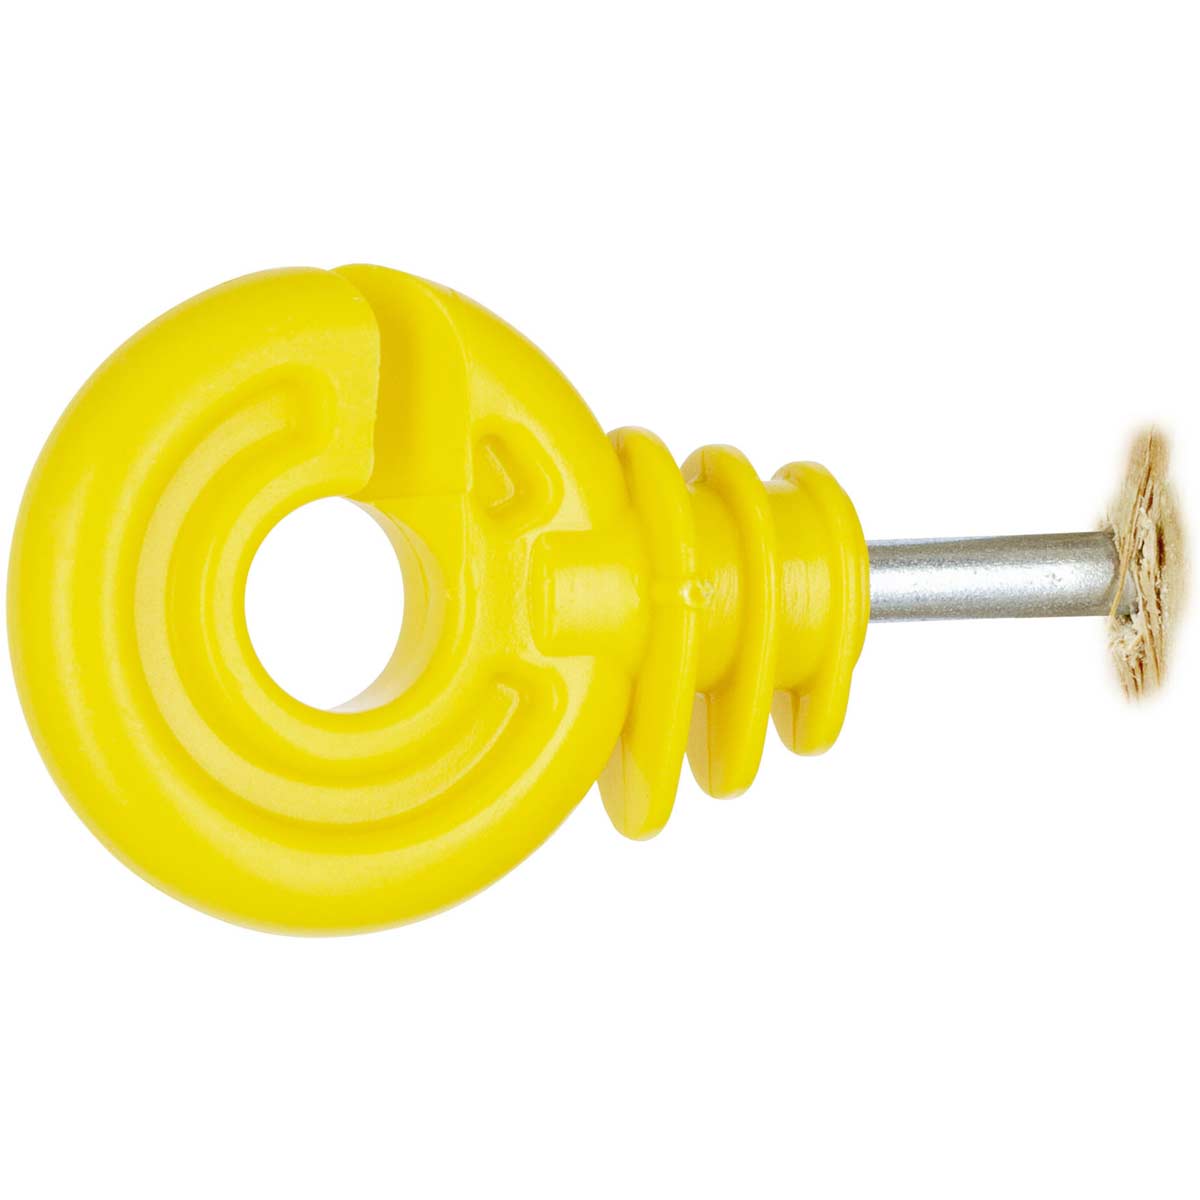 25x AKO isolatore ad anello giallo con sostegno corto 5 mm